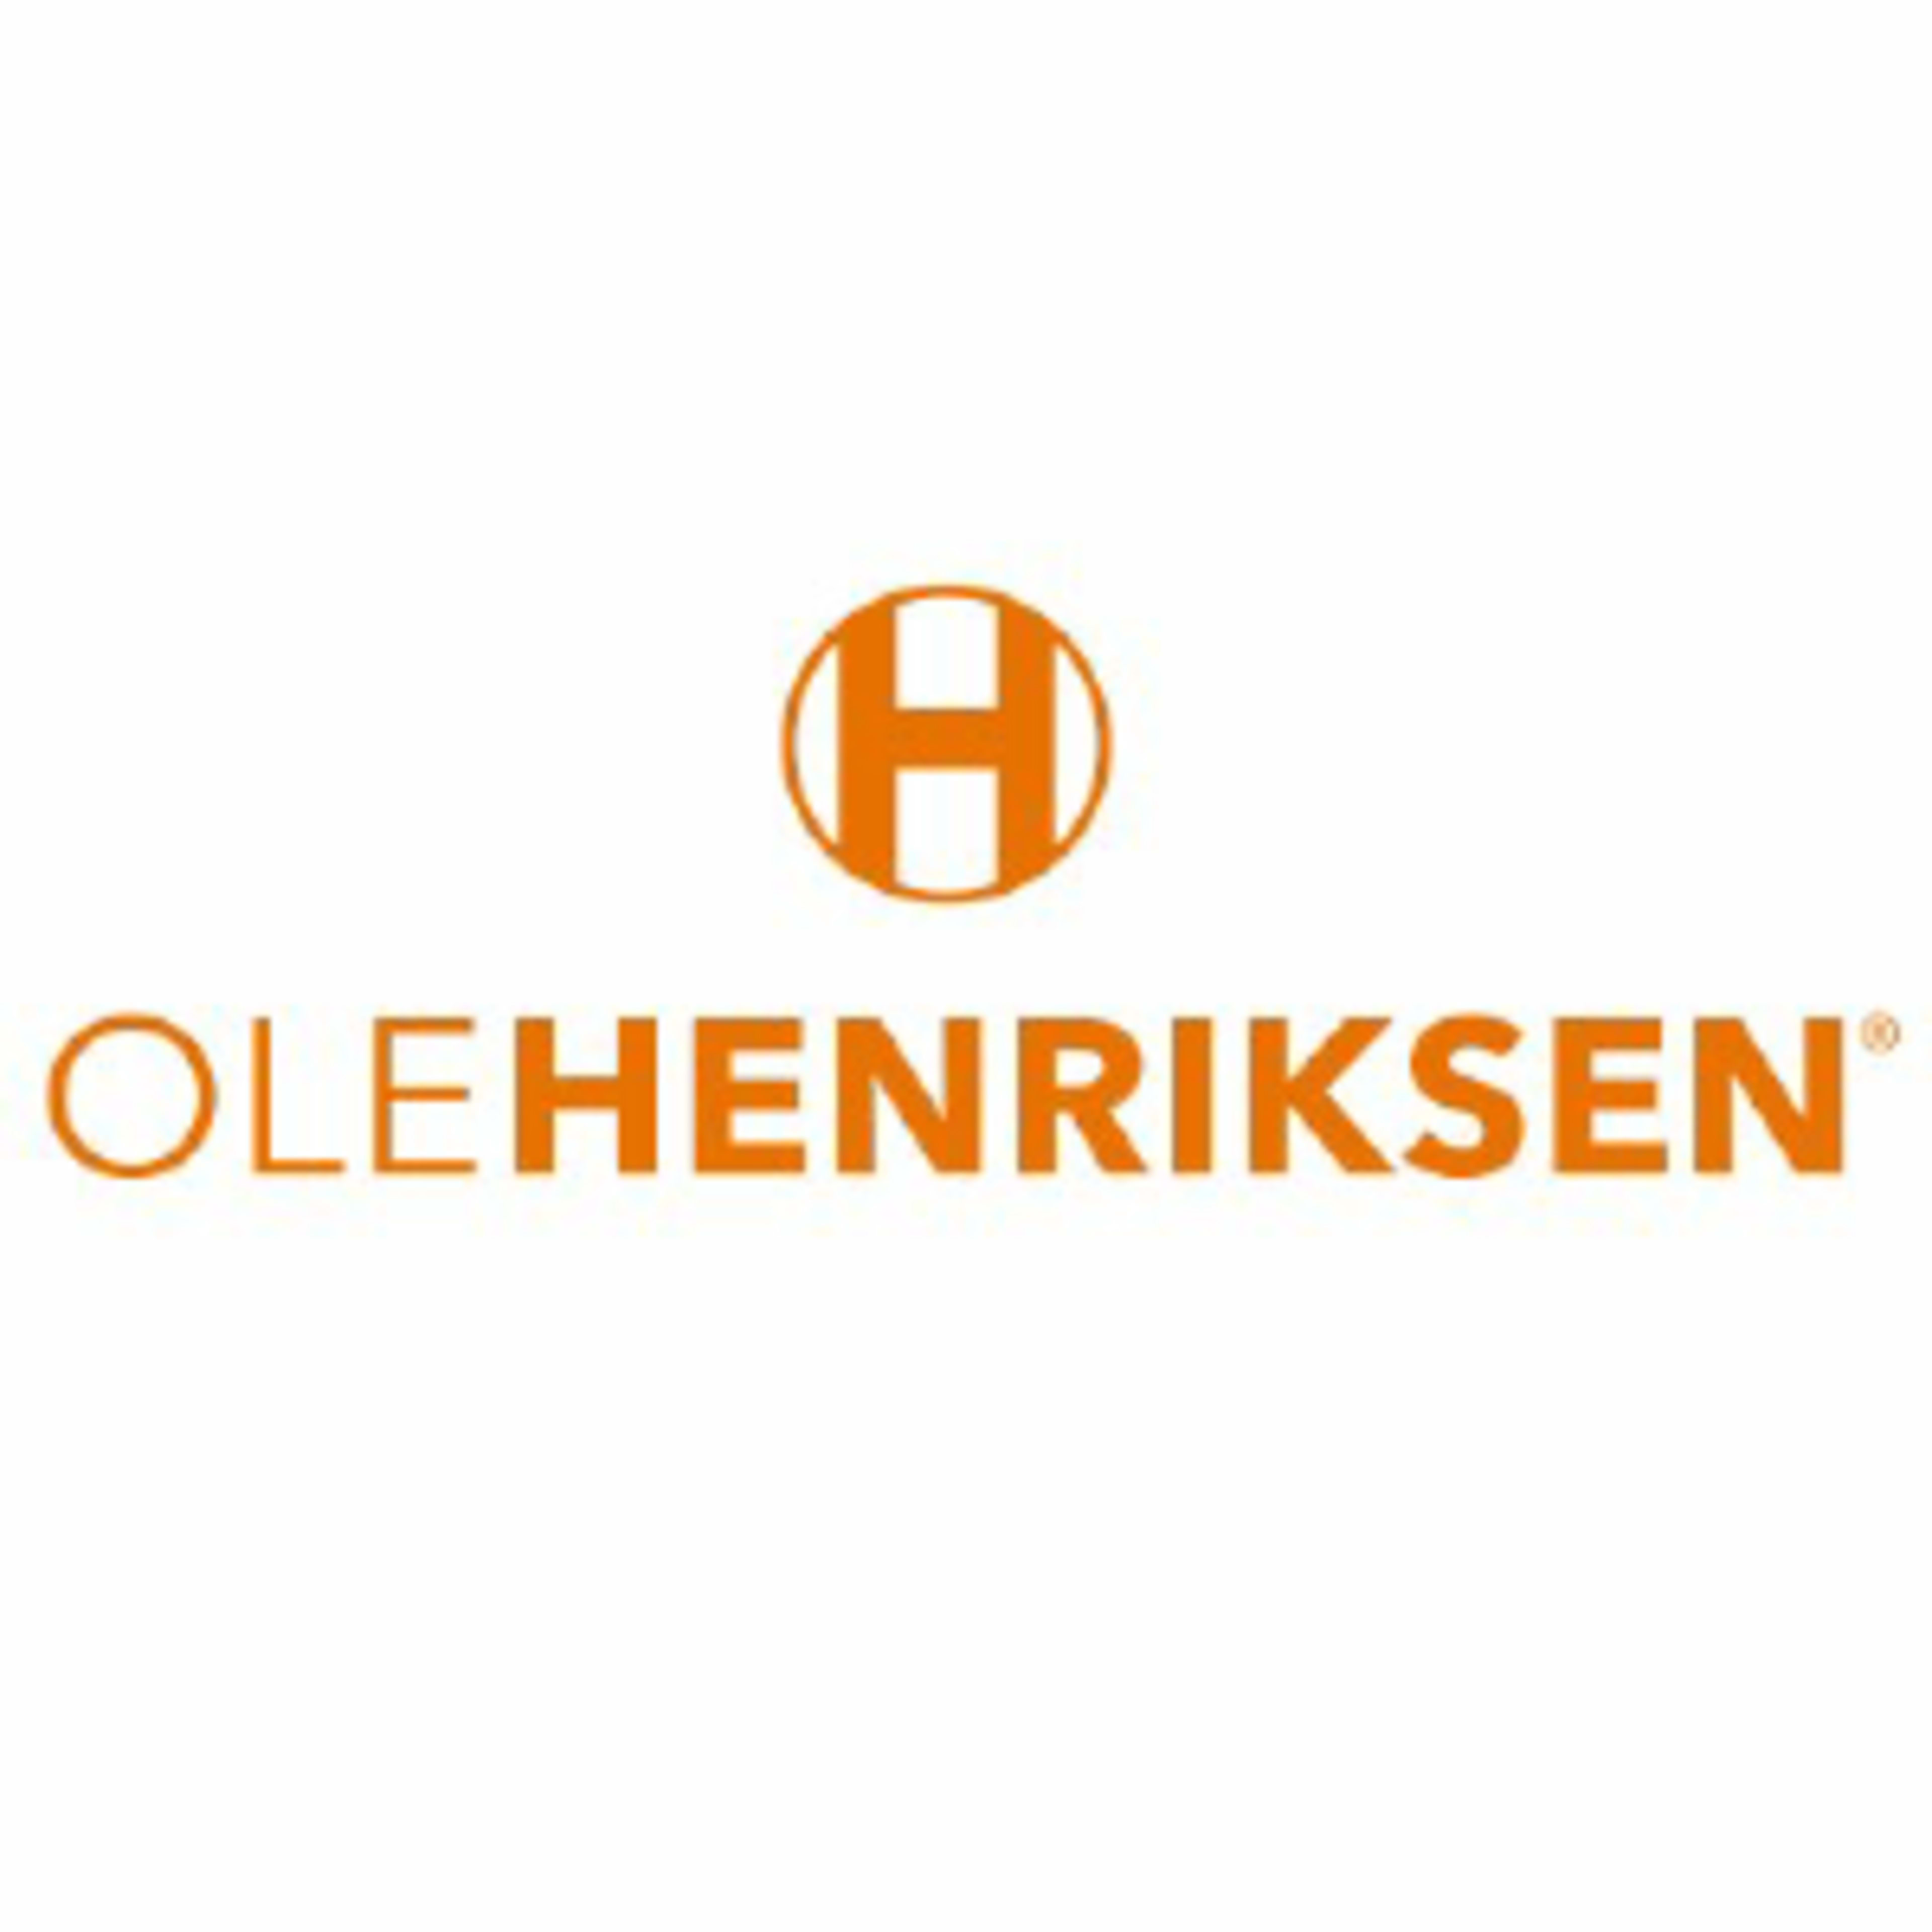 Ole Henriksen Code